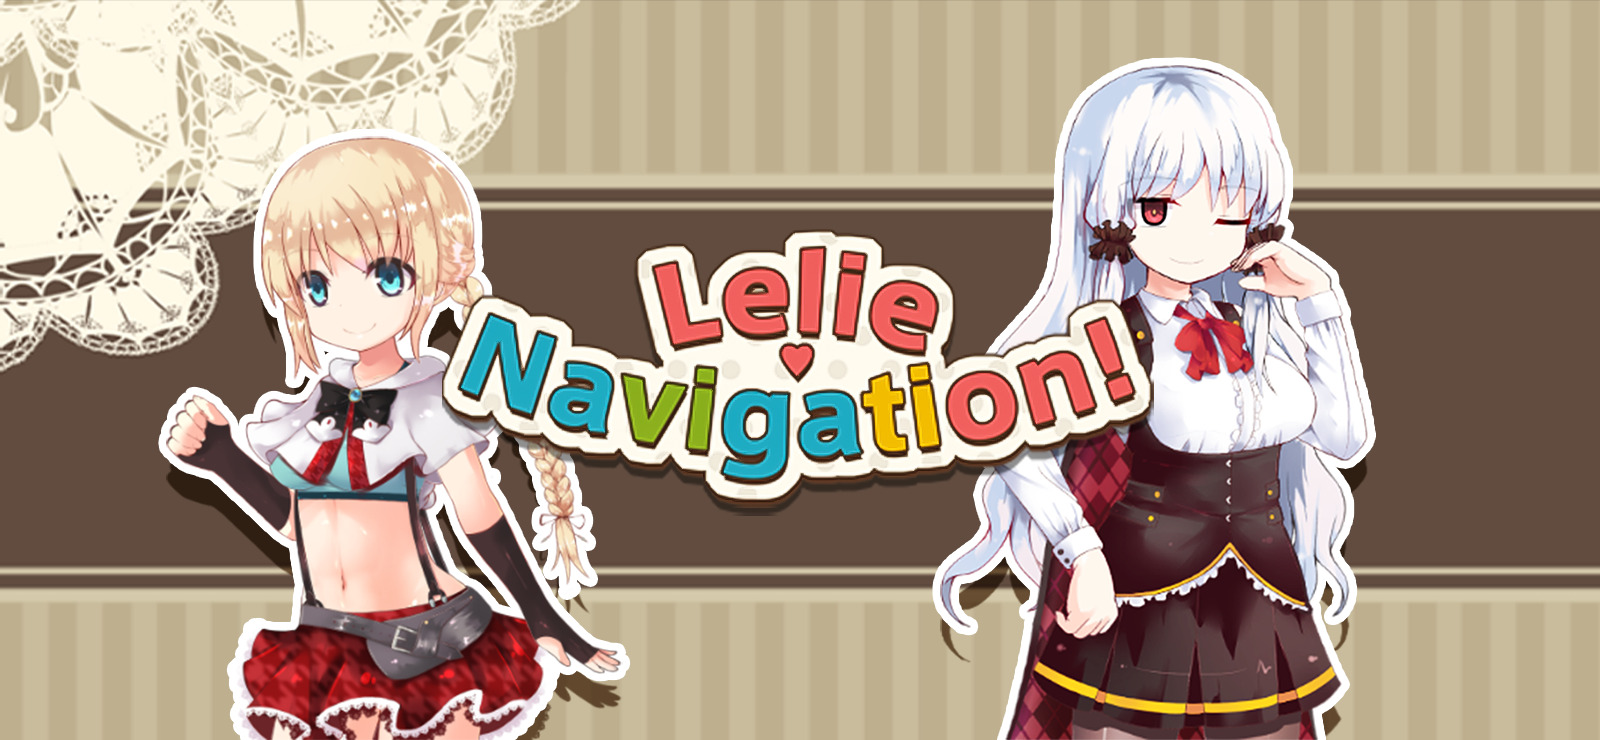 Lelie Navigation! na GOG.COM